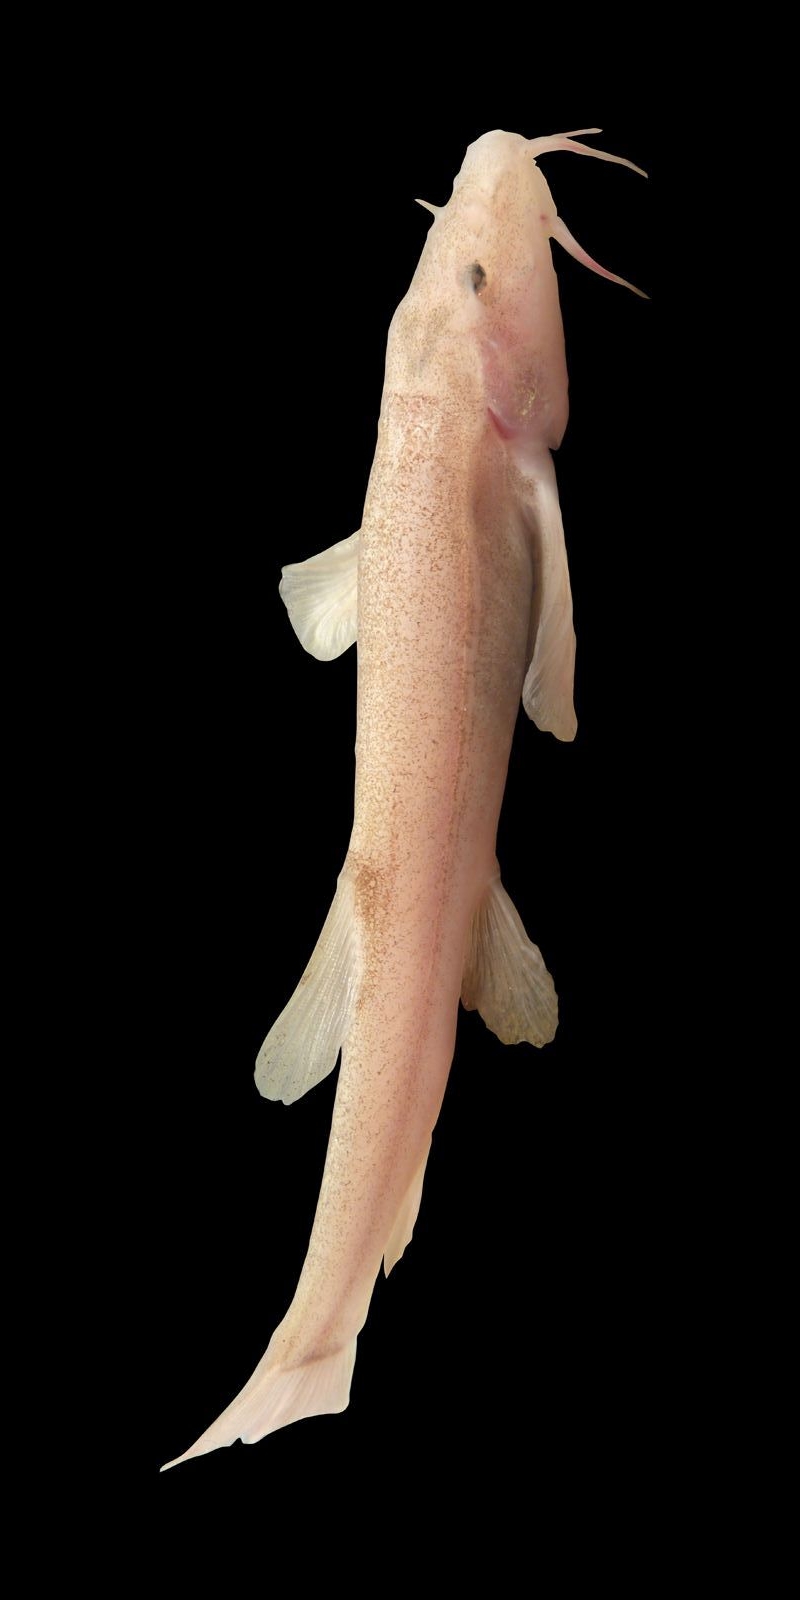 Bild von einem rosafarbenen Höhlenfisch auf schwarzem Hintergrund